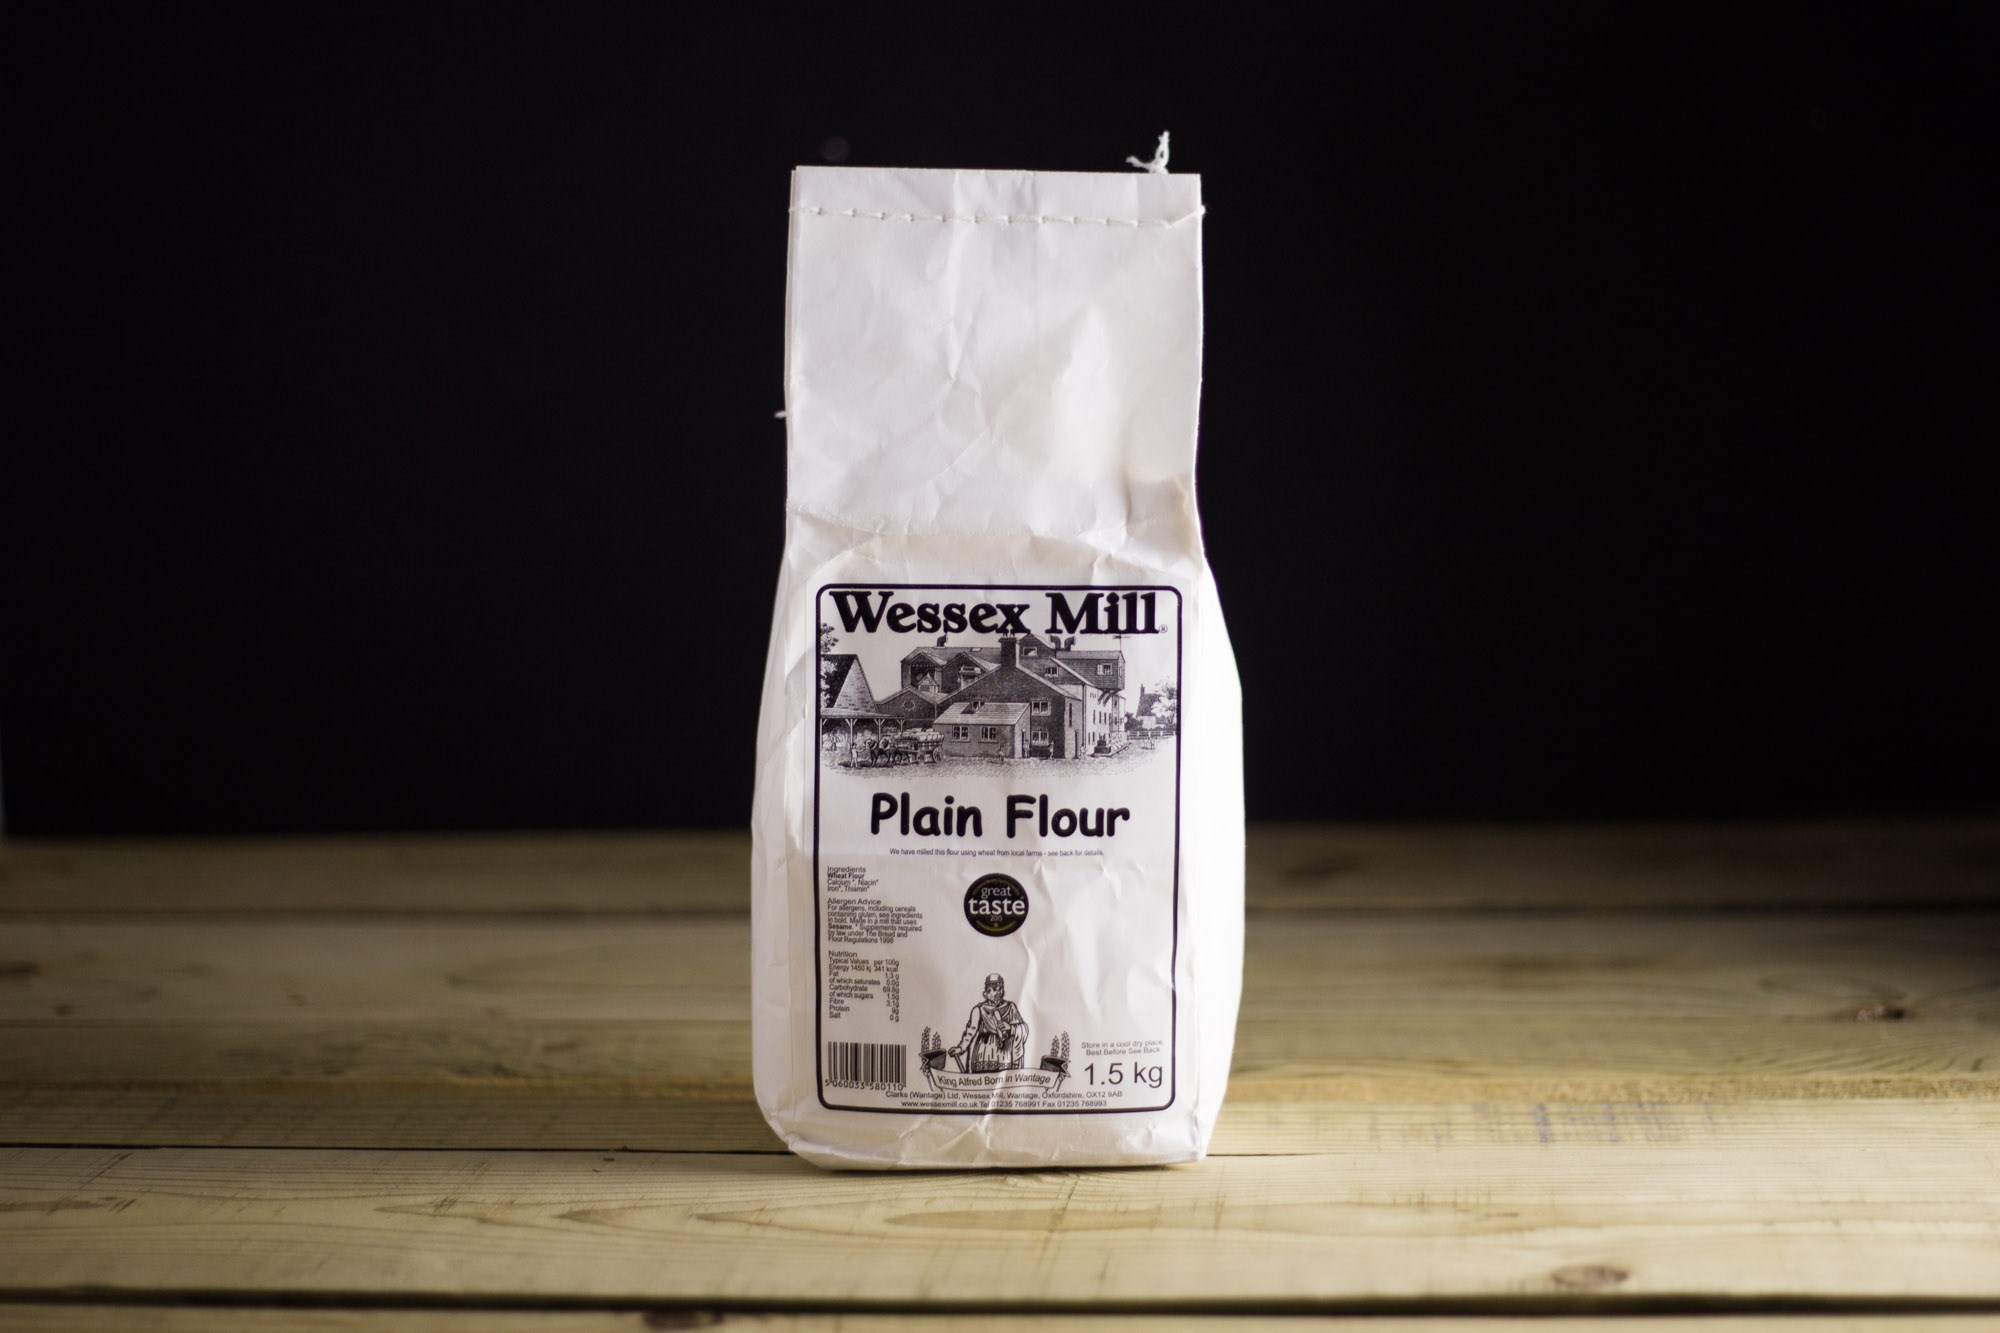 Wessex Mill Plain flour